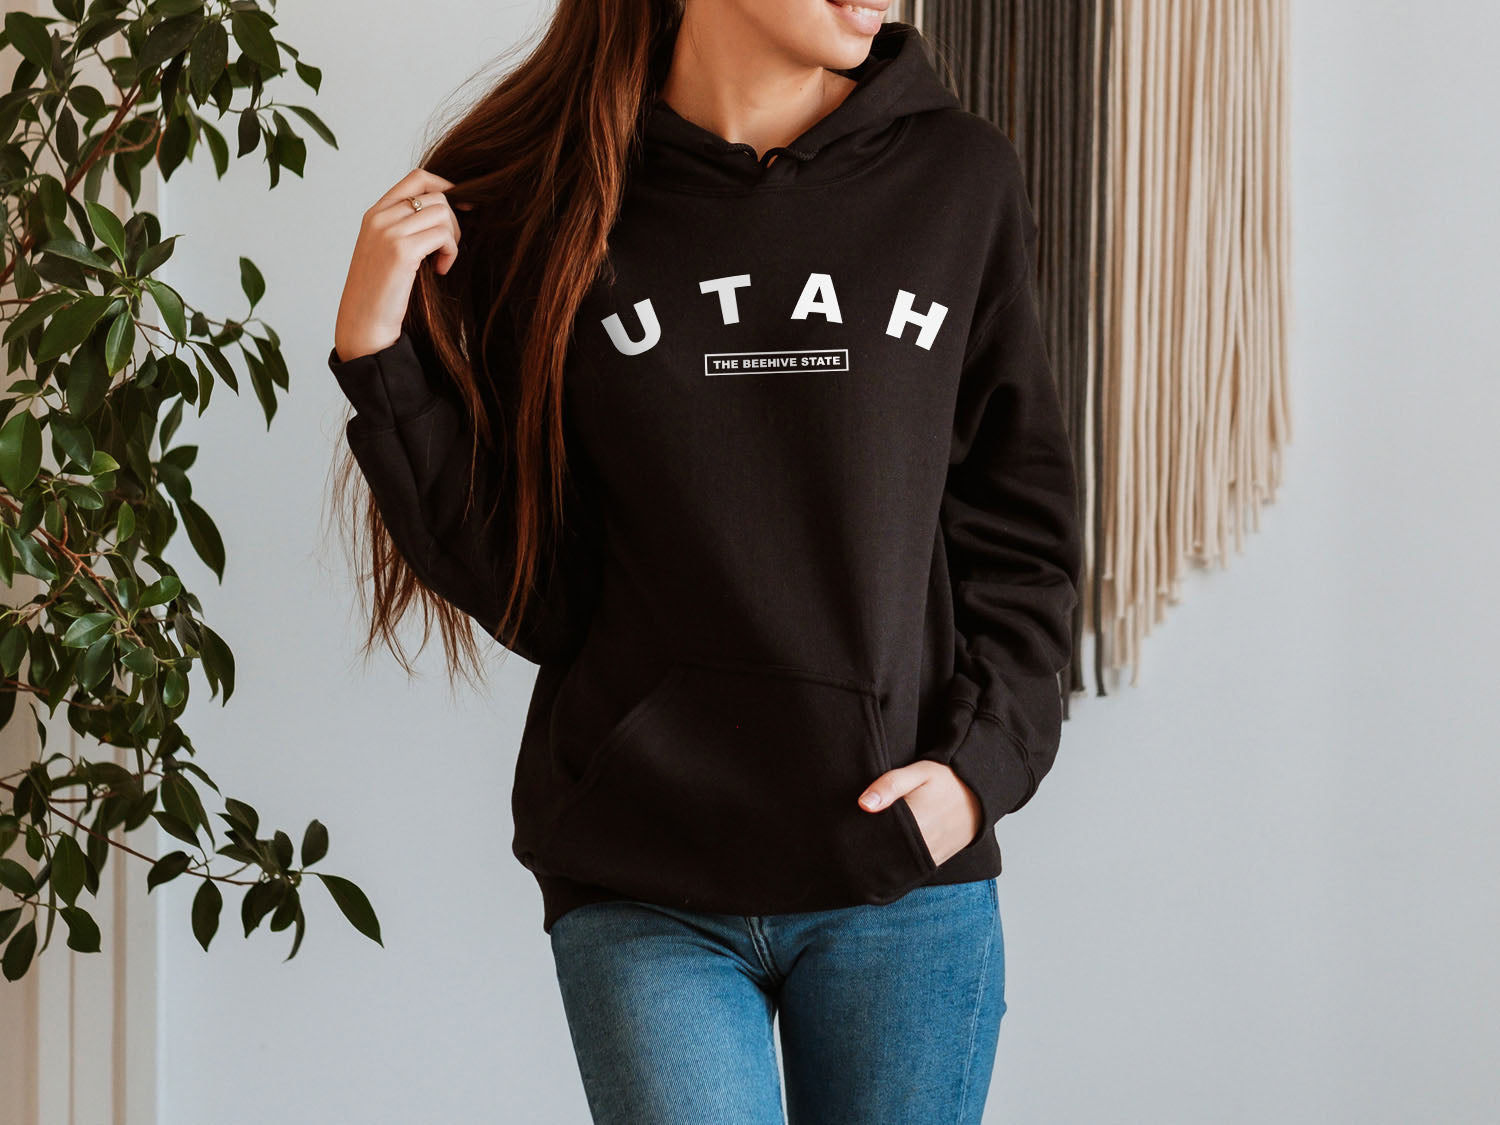 Utah The Beehive State Hoodie - United States Name & Slogan Minimal Design Printed Hoodie